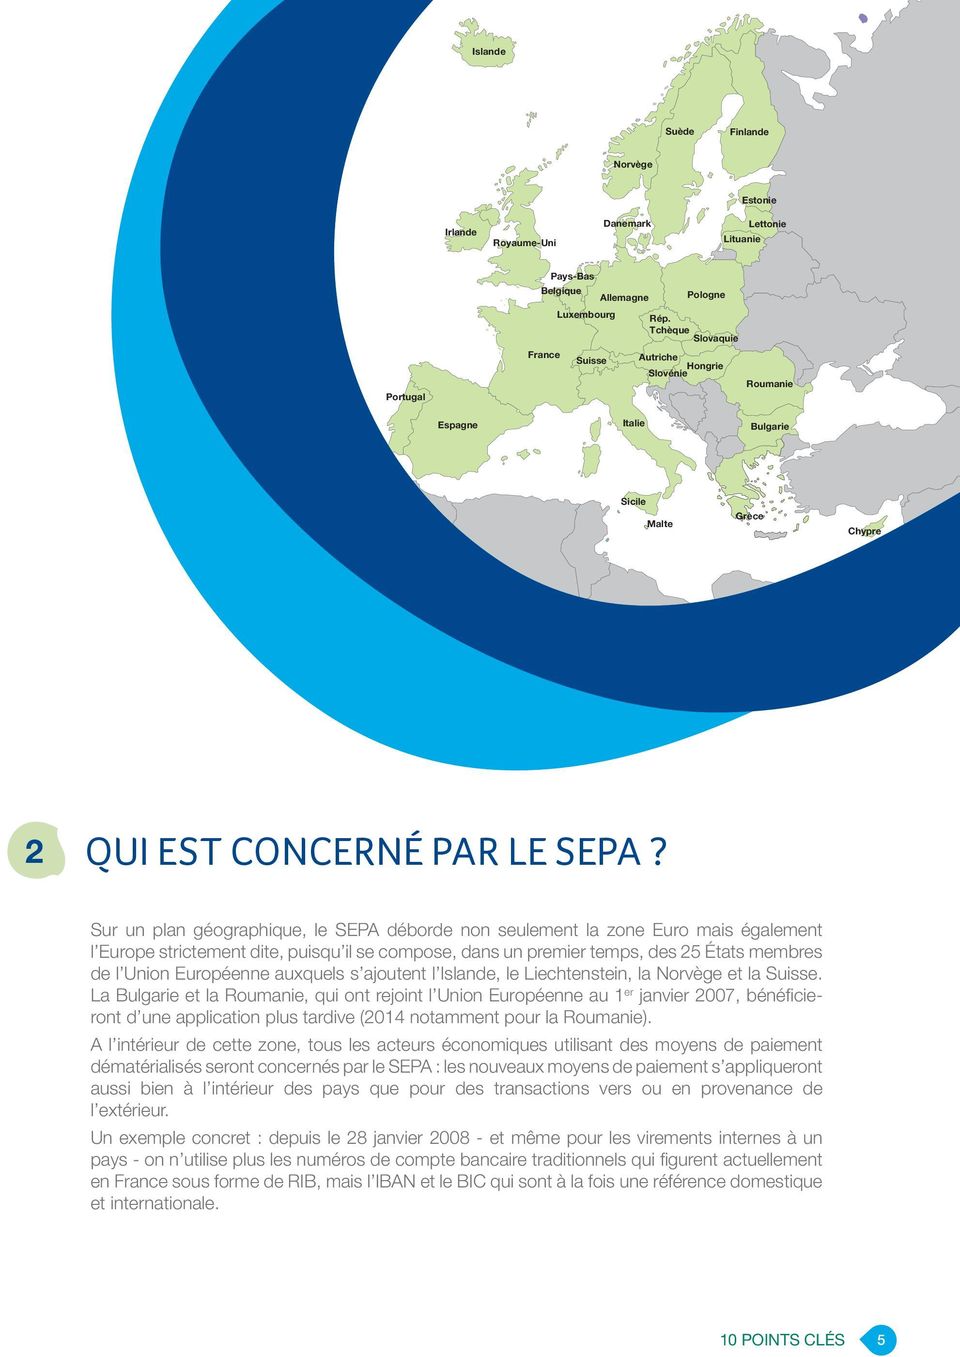 Sur un plan géographique, le SEPA déborde non seulement la zone Euro mais également l Europe strictement dite, puisqu il se compose, dans un premier temps, des 25 États membres de l Union Européenne